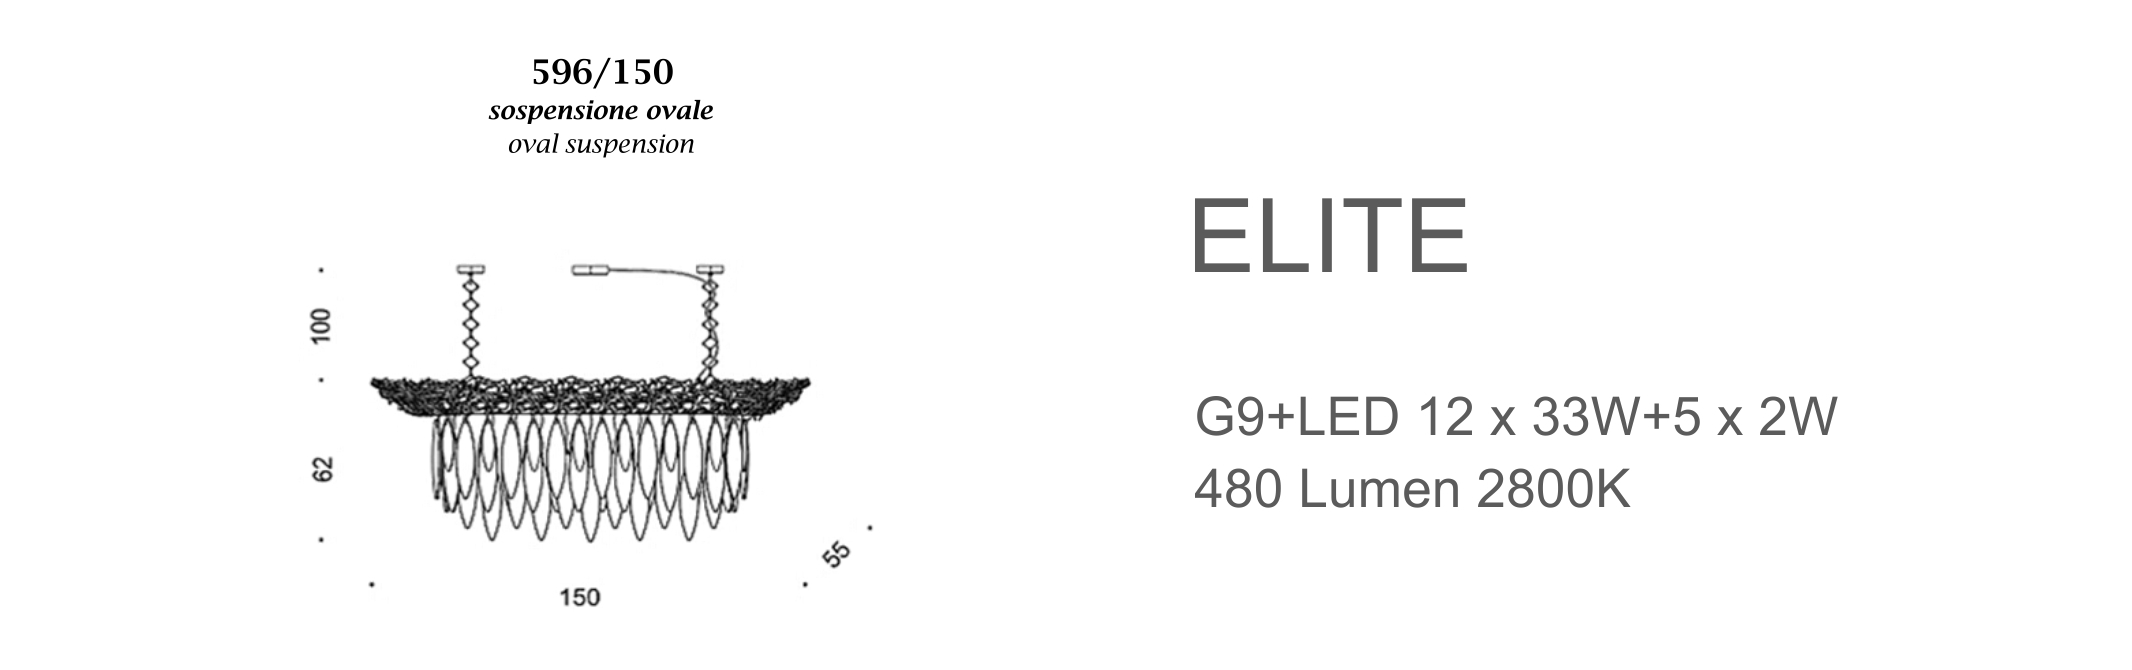 Elite 596/150